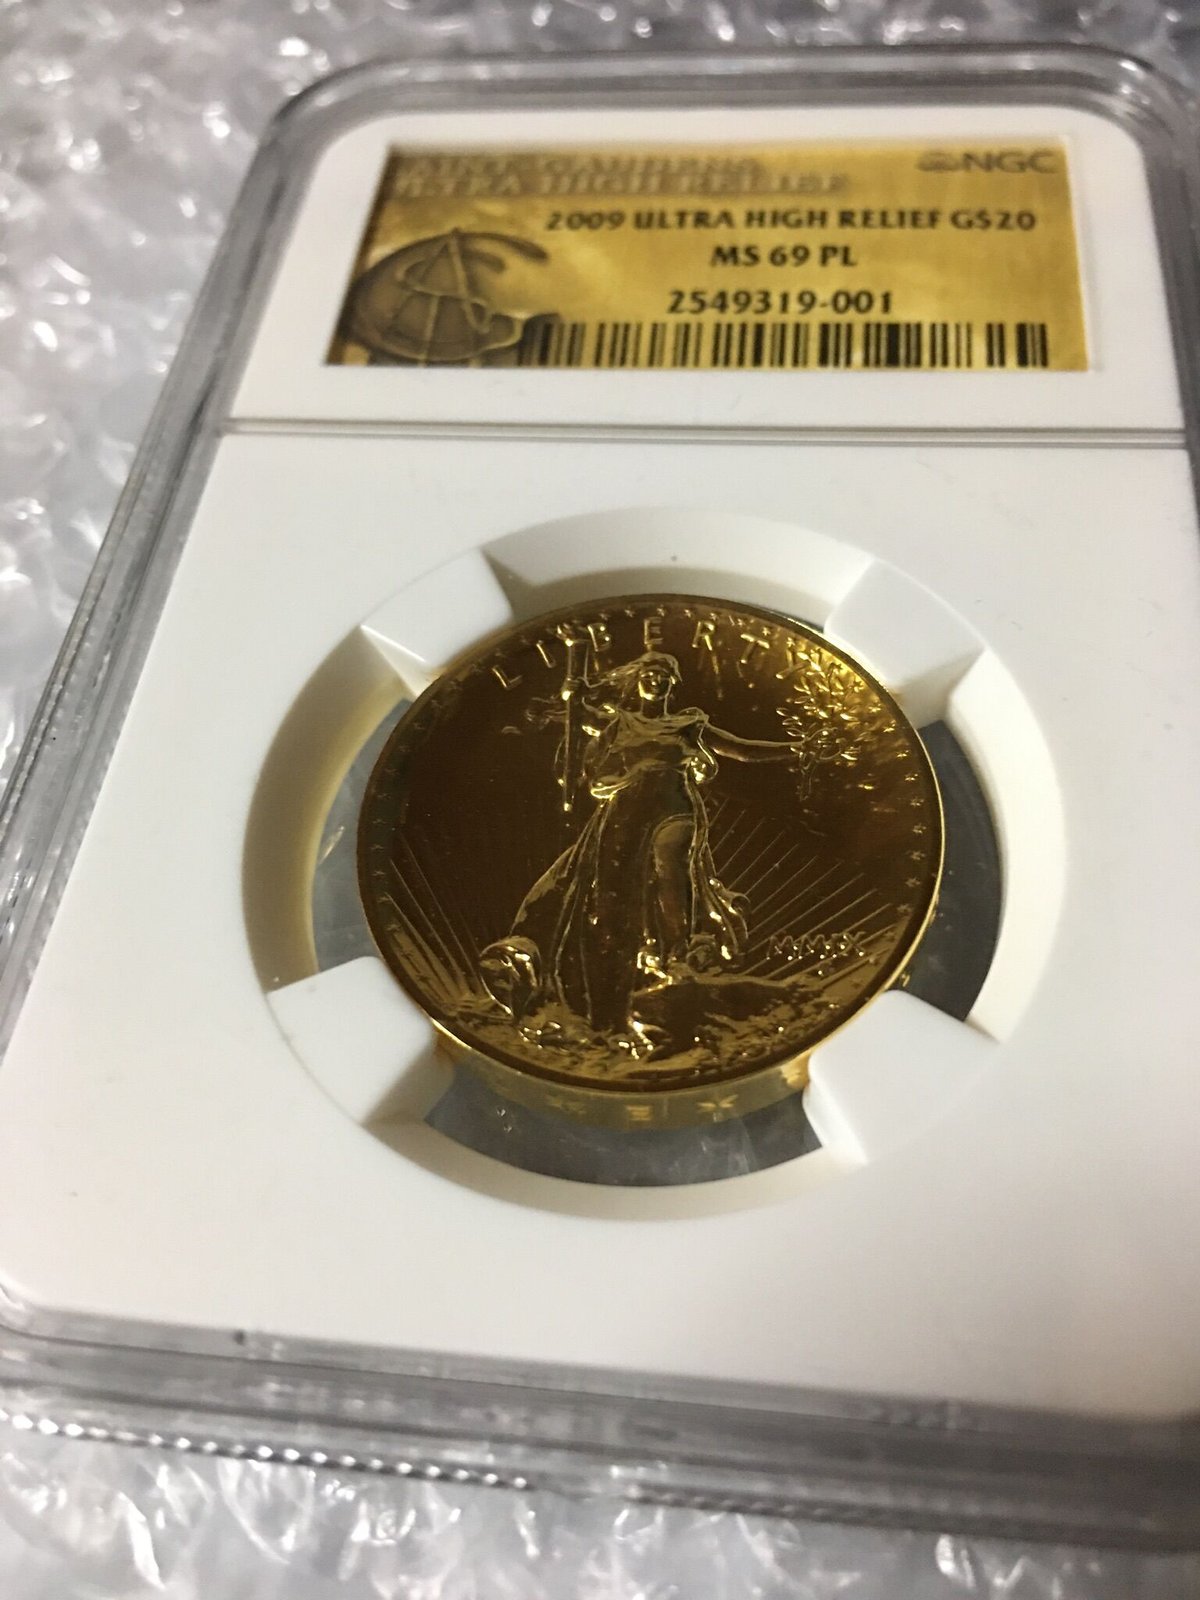 【NGC MS69PL 】2009年 ウルトラハイレリーフ金貨 コイン 